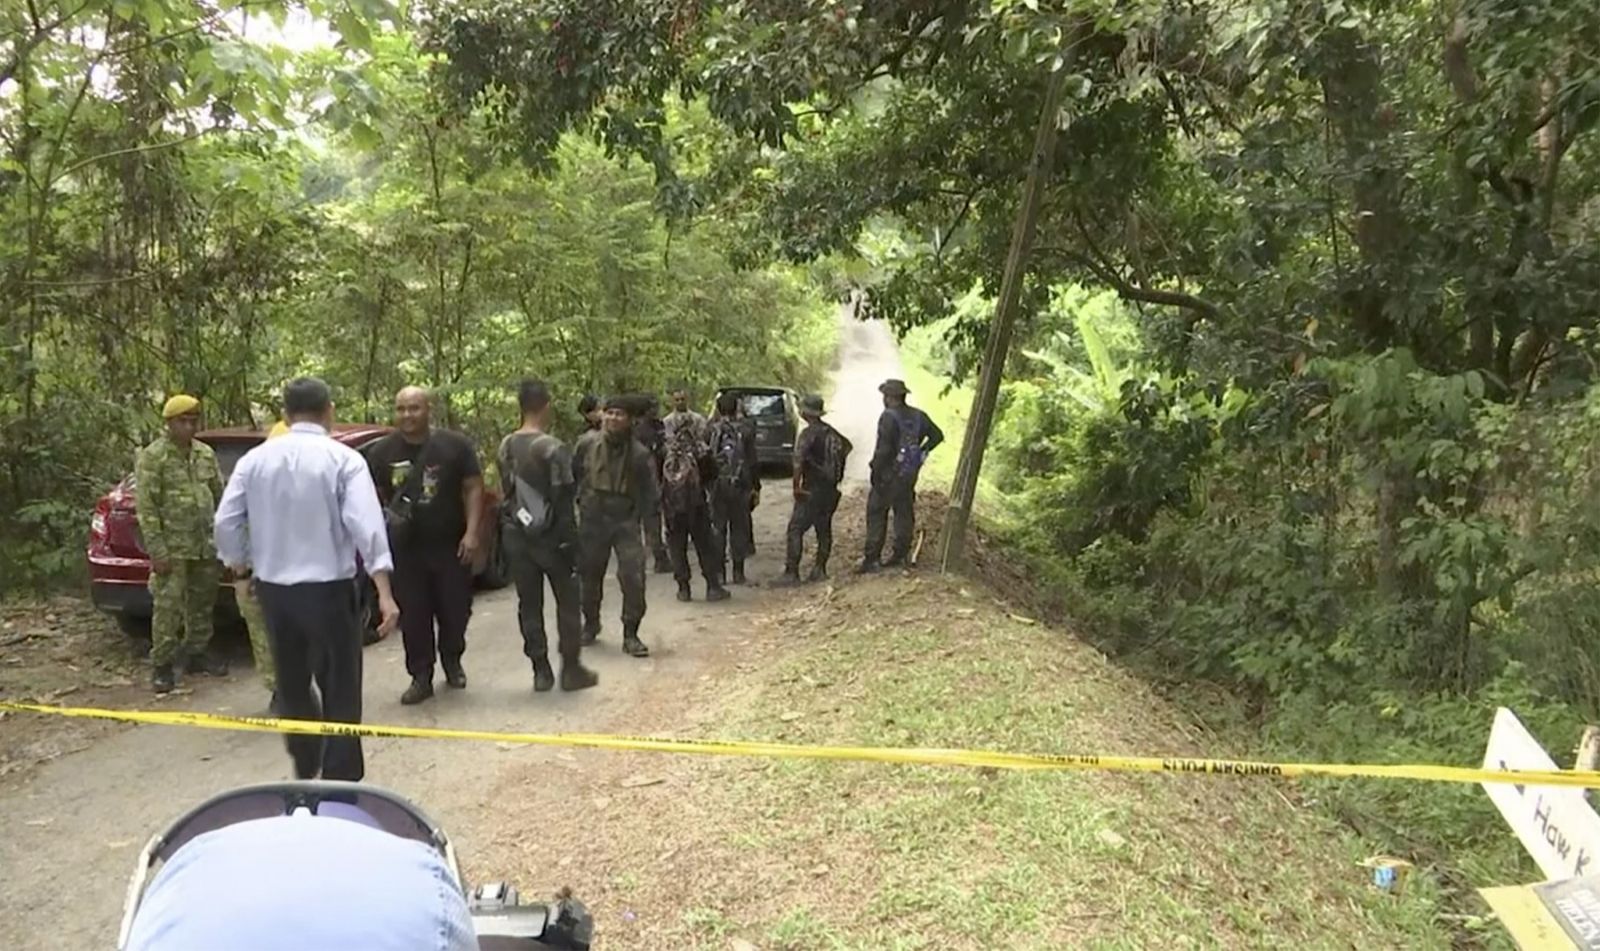 Zmizení Nory Quoirin. Patnáctiletá dívka umřela za zvláštních okolností v Malajsii, našli ji nahou v džungli